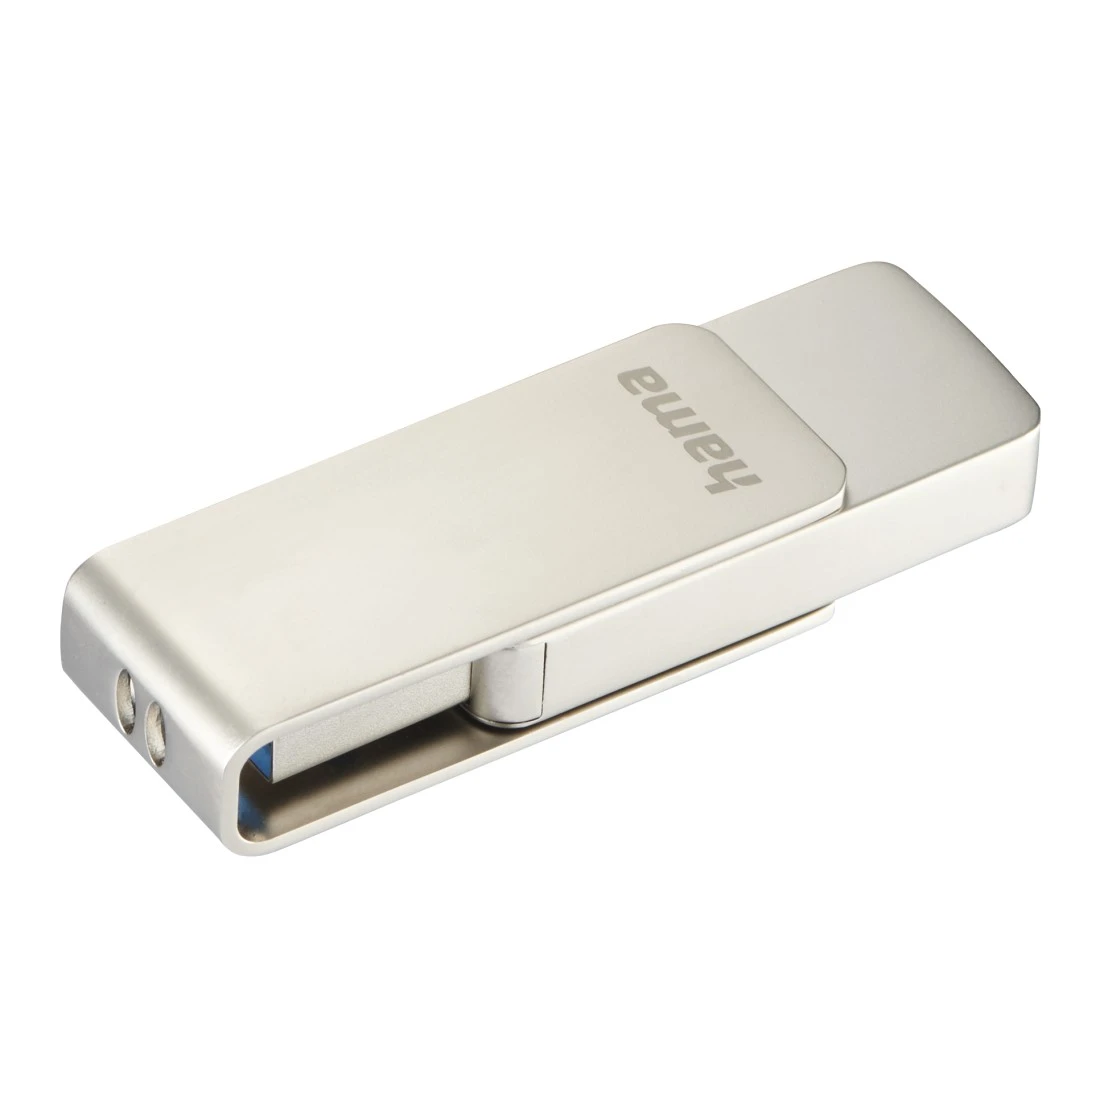 USB-Stick "Rotate Pro", USB 3.0, 512GB, 100MB/s, Silber | Hama